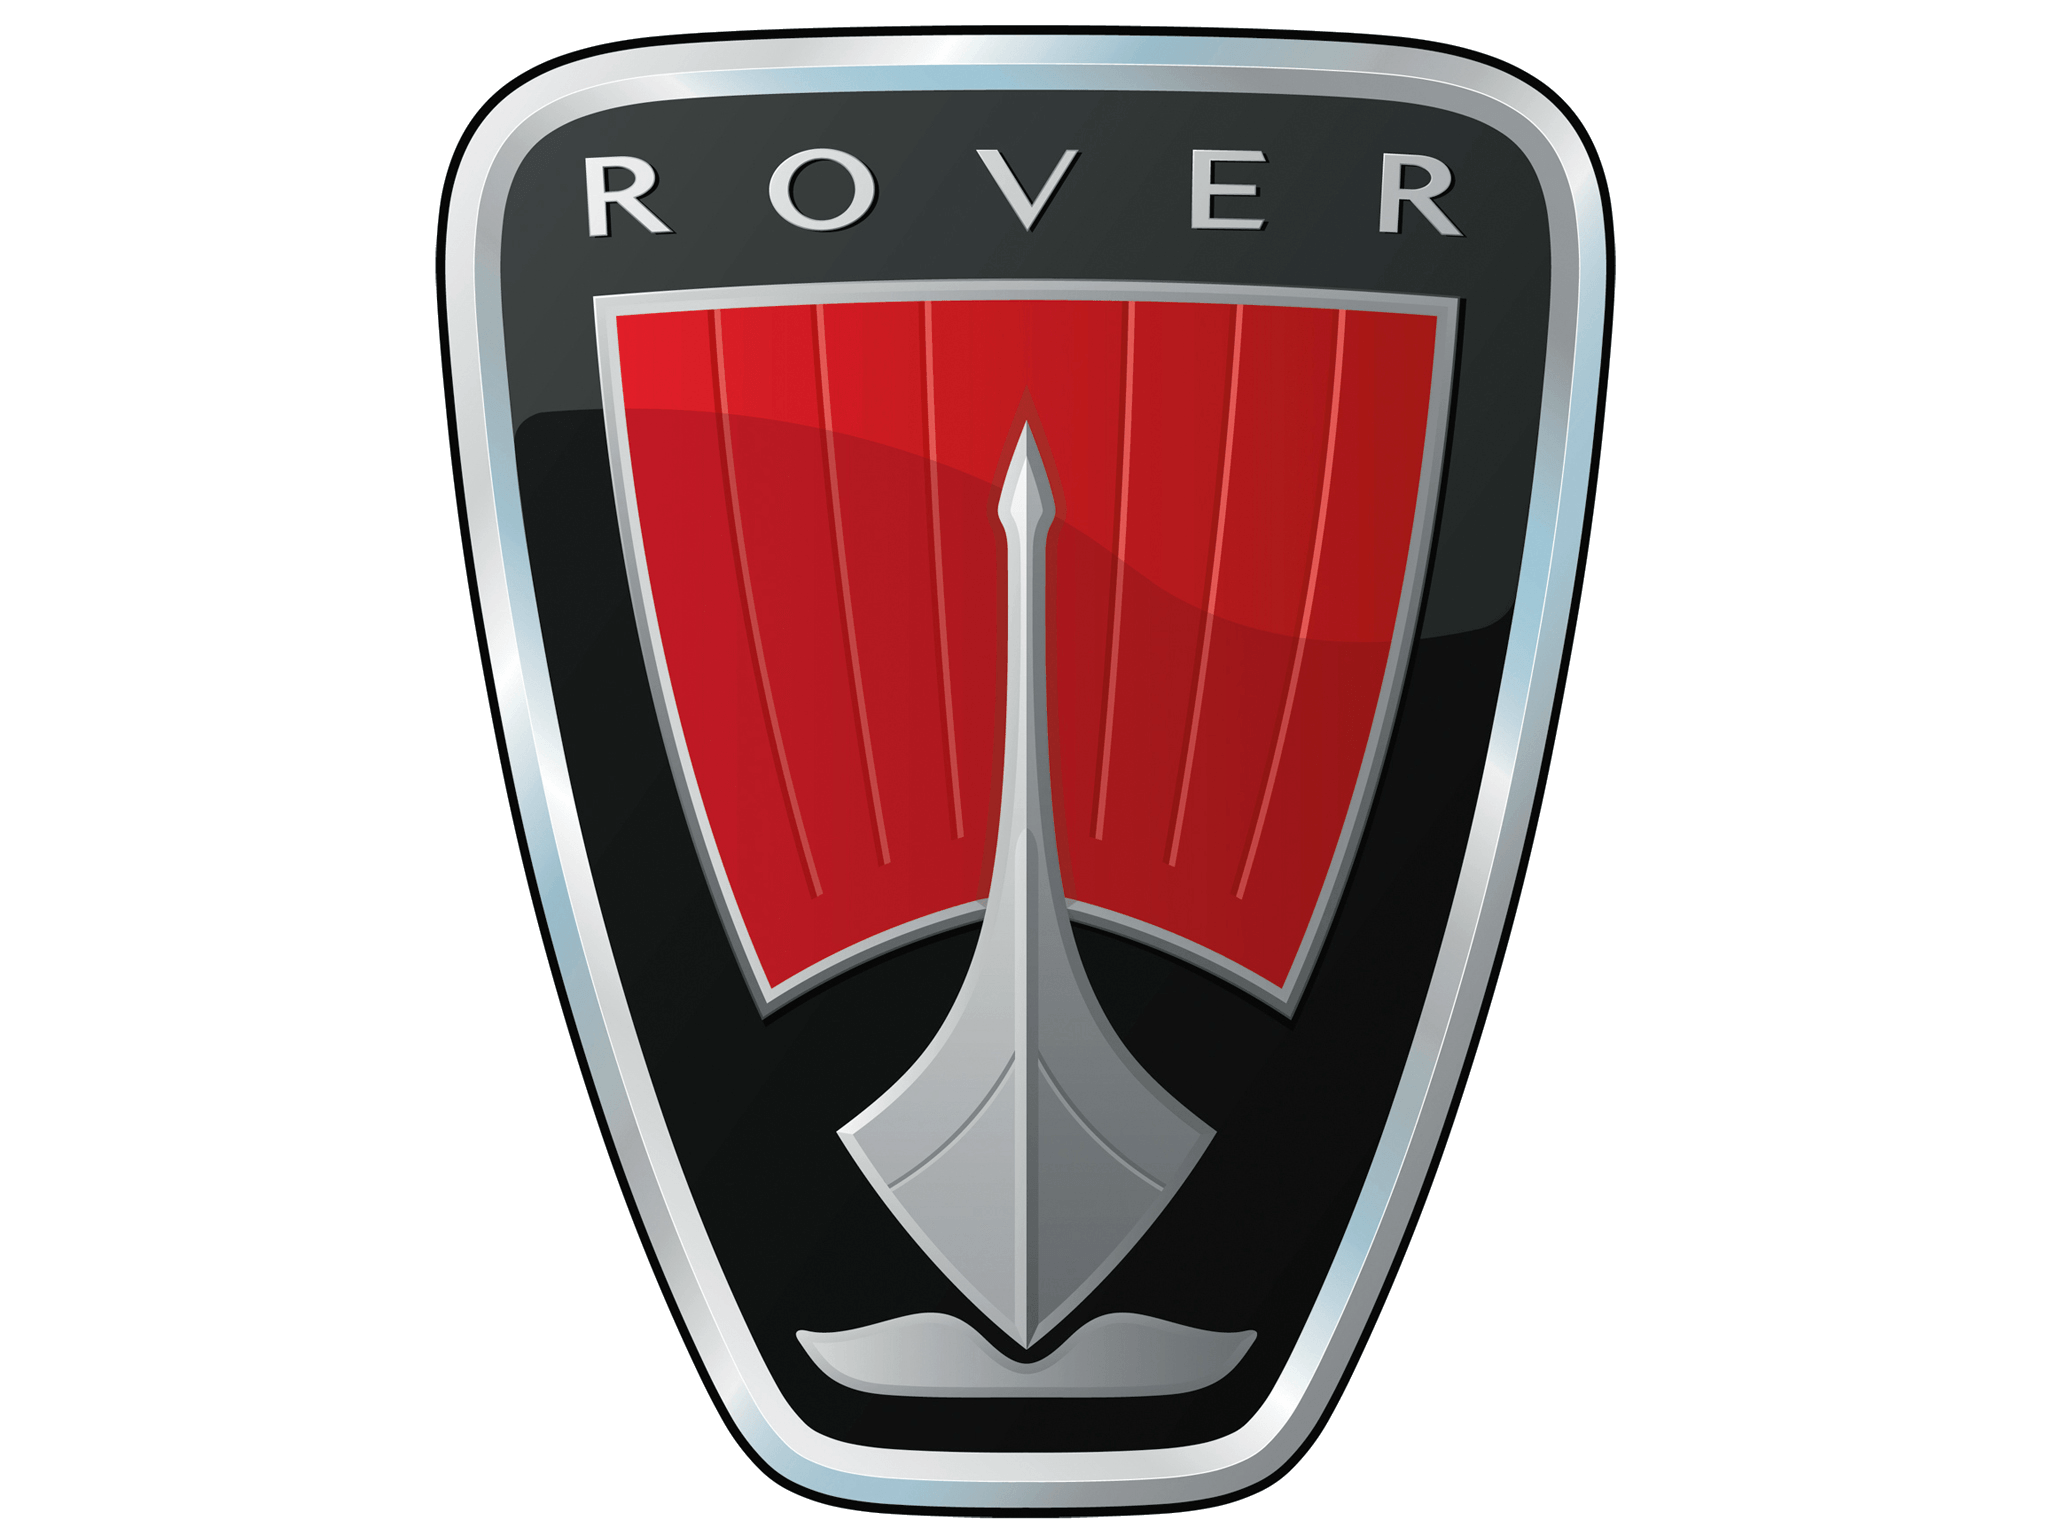 Red Car Company Logo - Rover Logo, Rover Car Symbol Meaning And History. Car Brand Names.com